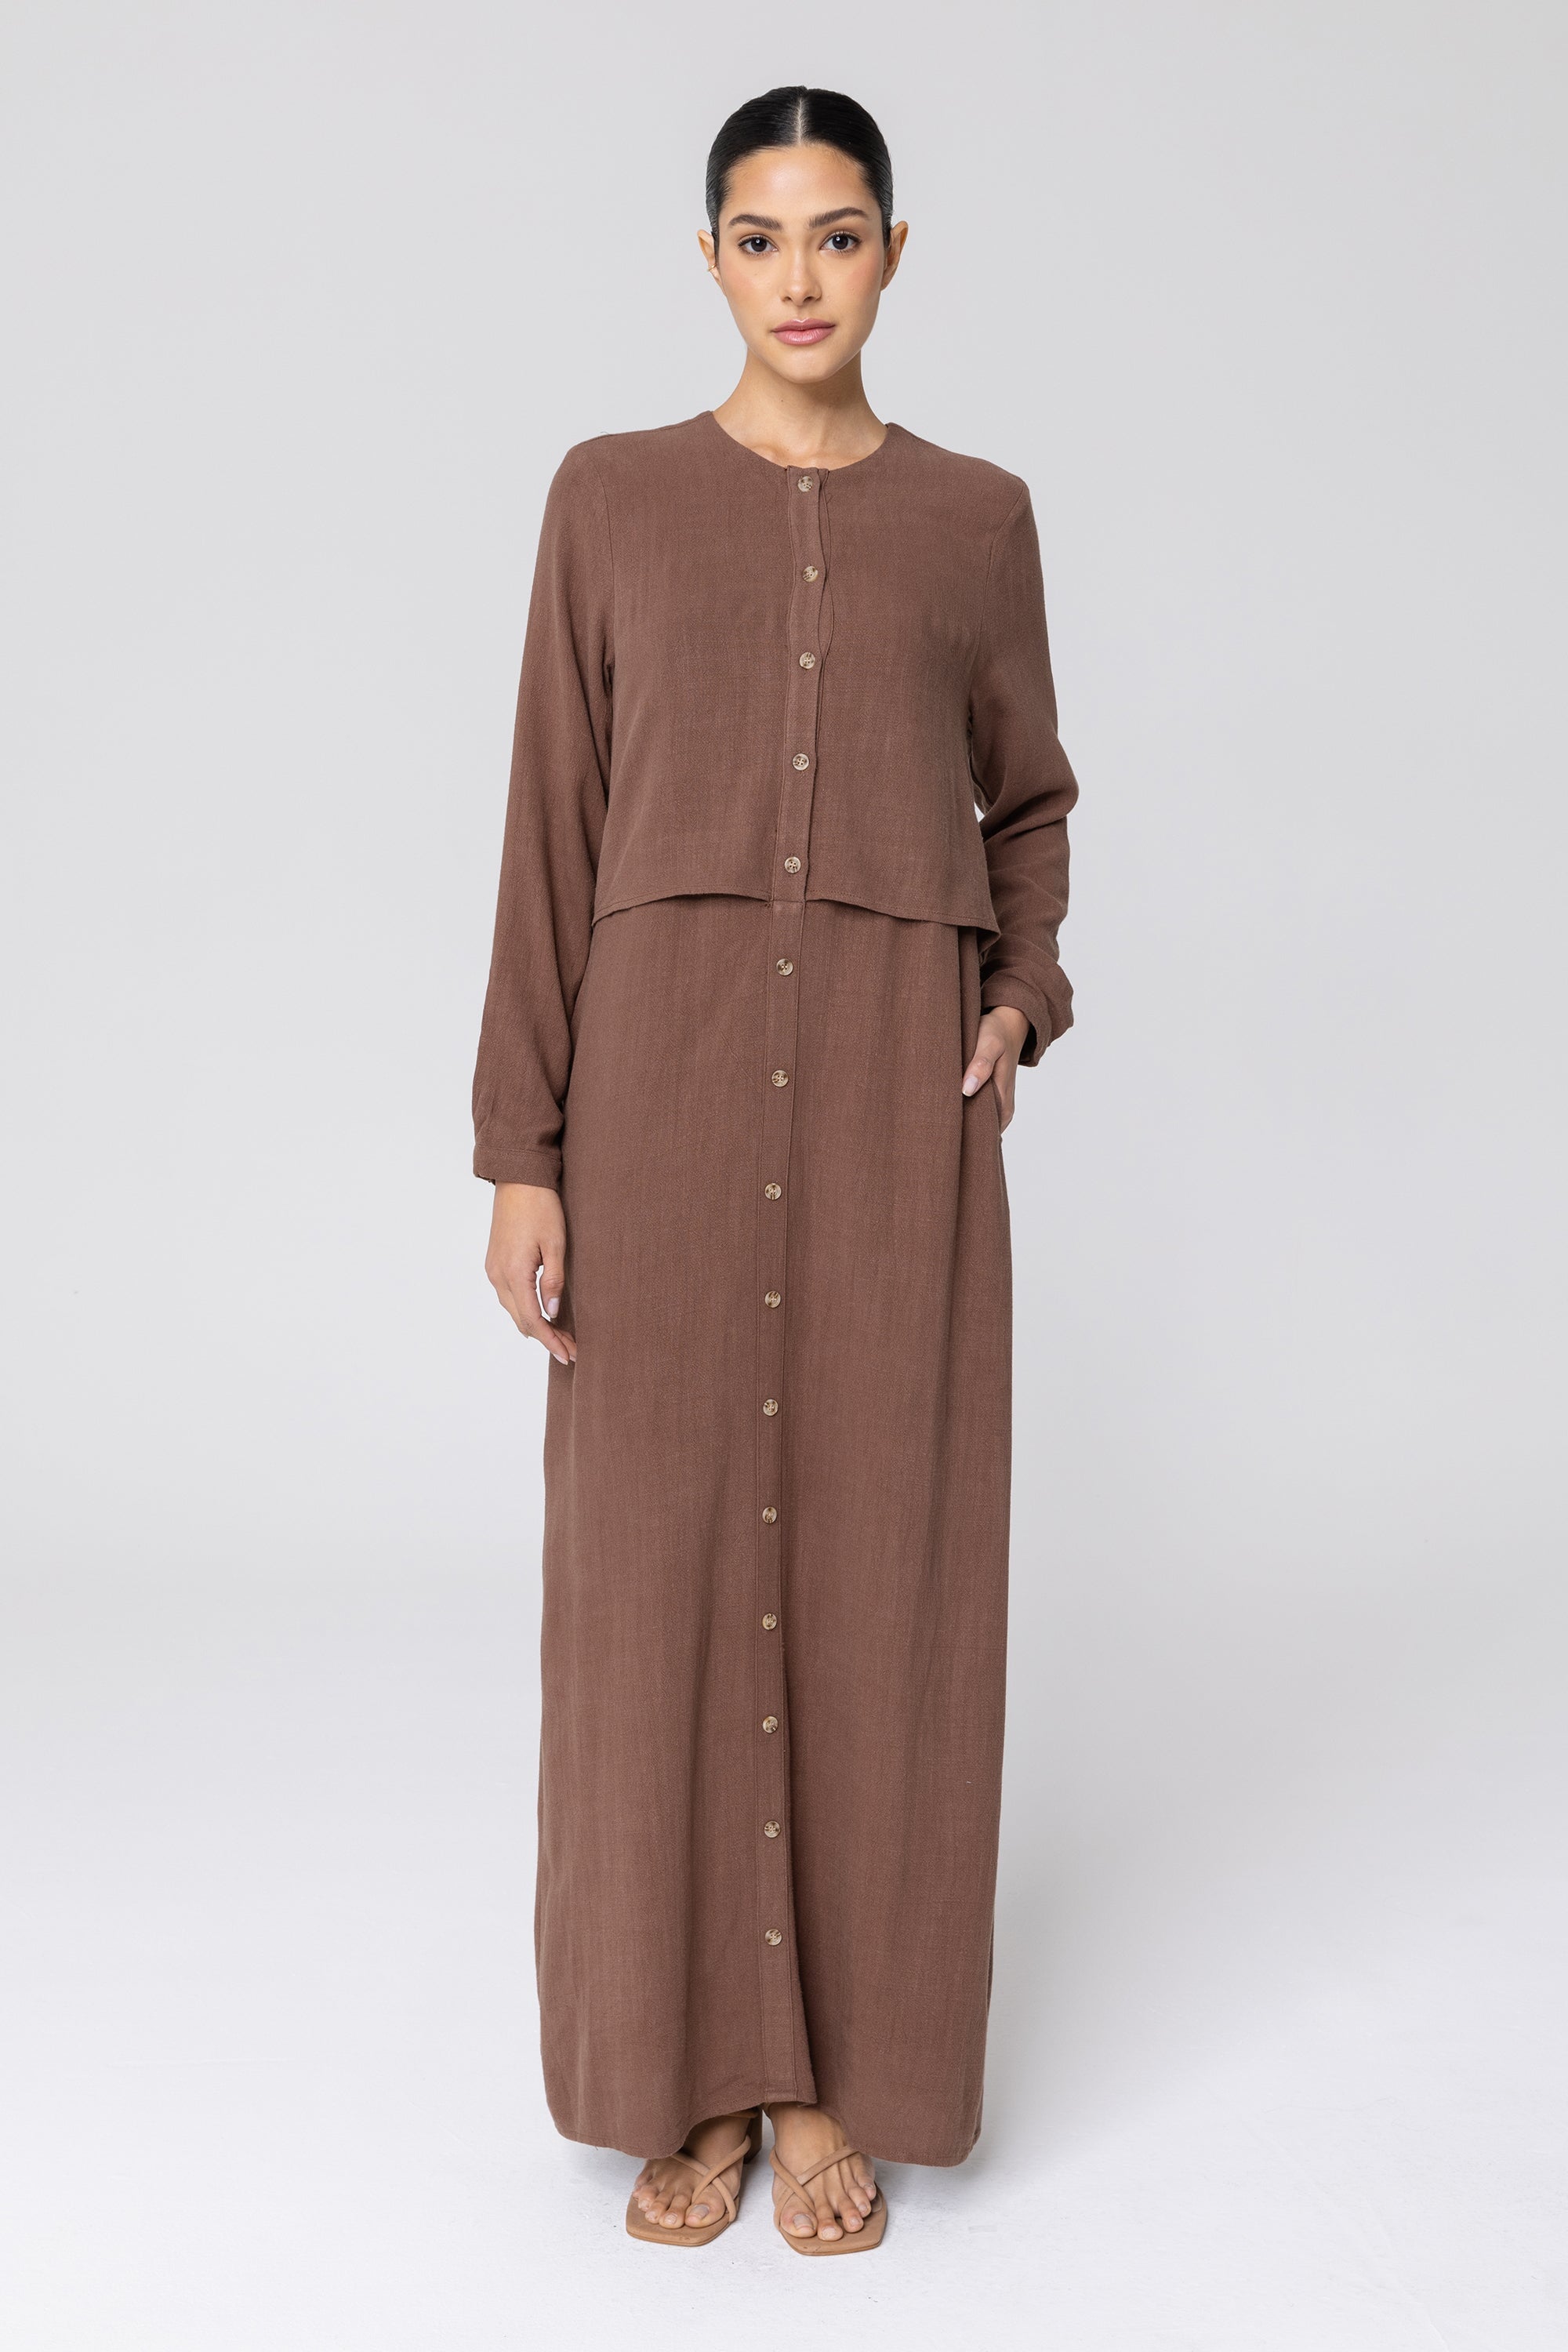 Sabah Cotton Linen Overlay Maxi Shirt Dress - Brown epschoolboard 